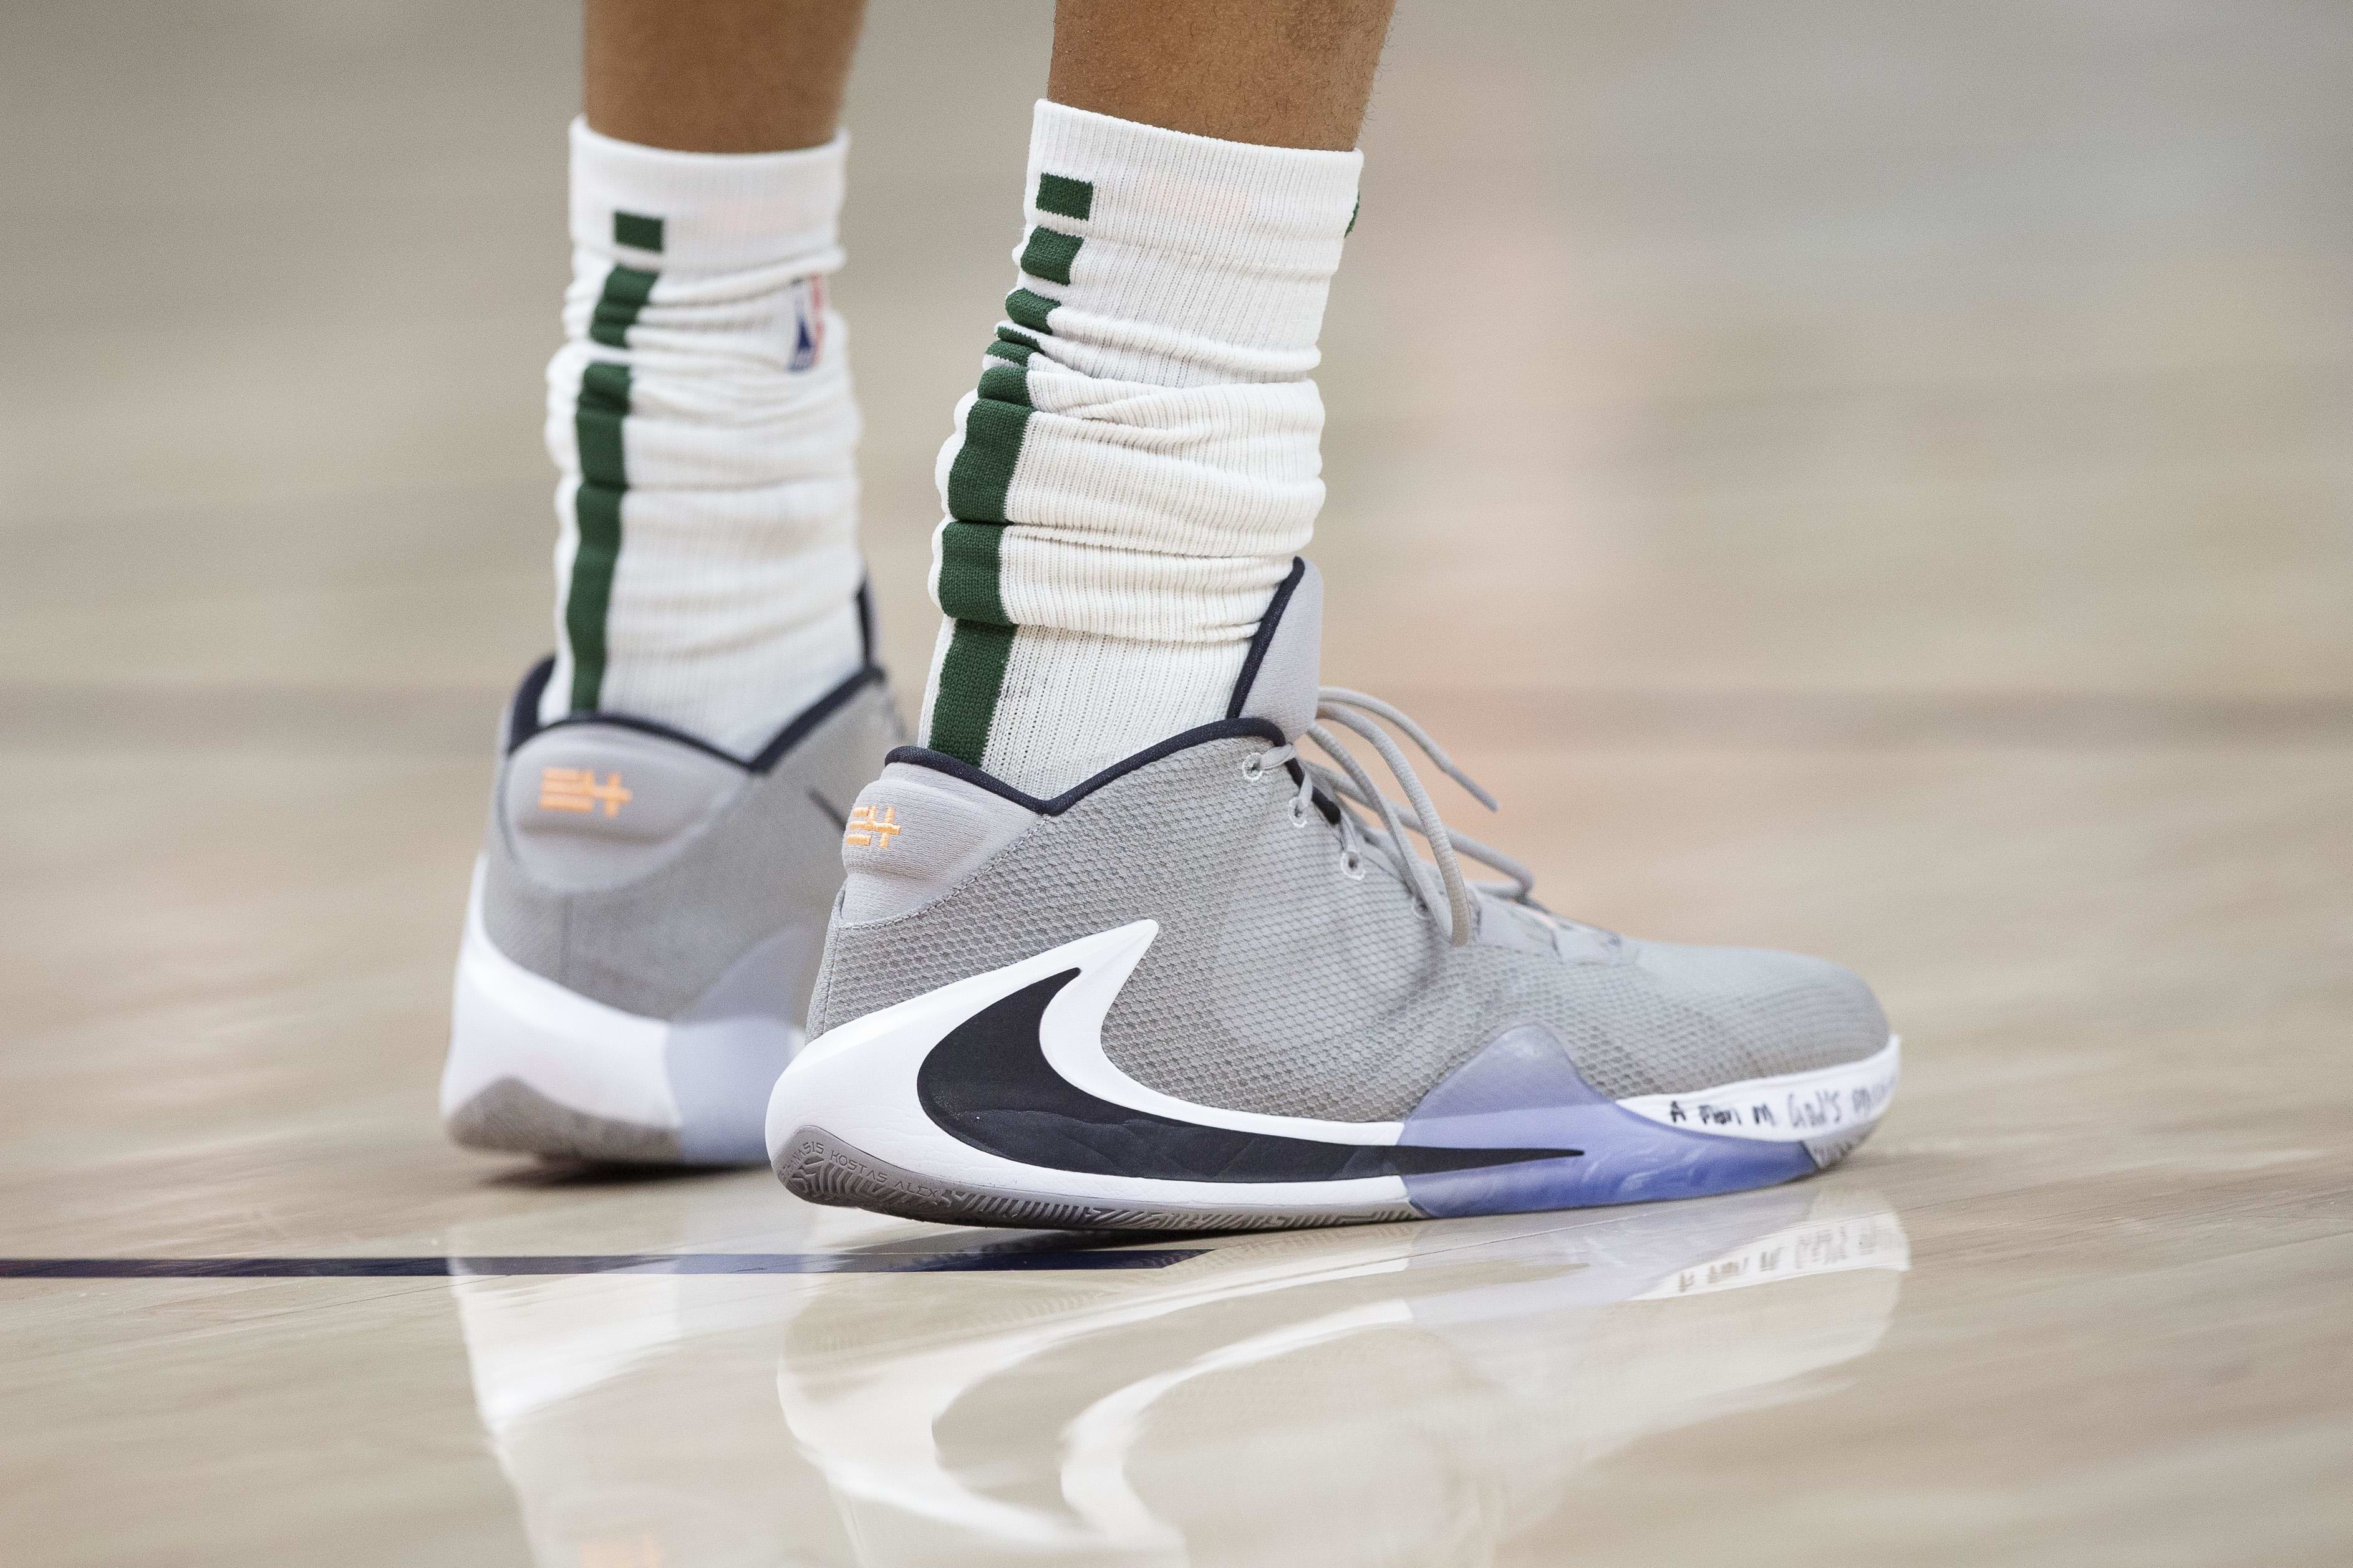 Milwaukee Bucks forward Giannis Antetokounmpo's grey and white Nike sneakers.